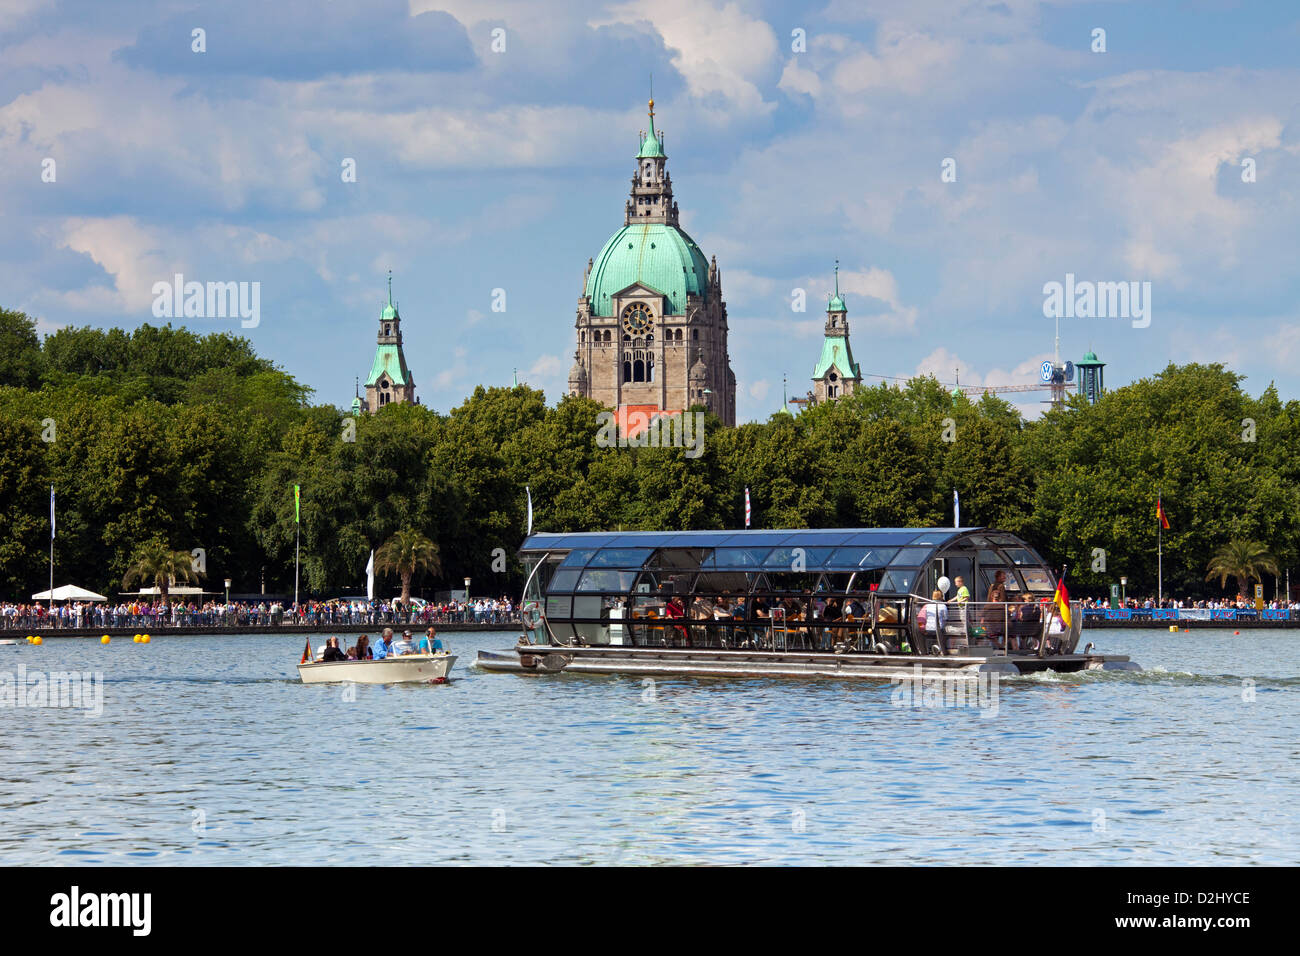 Ausflugsschiff mit Touristen auf künstlichen See Maschsee und New City Hall / Neues Rathaus im Hintergrund, Hannover, Deutschland Stockfoto